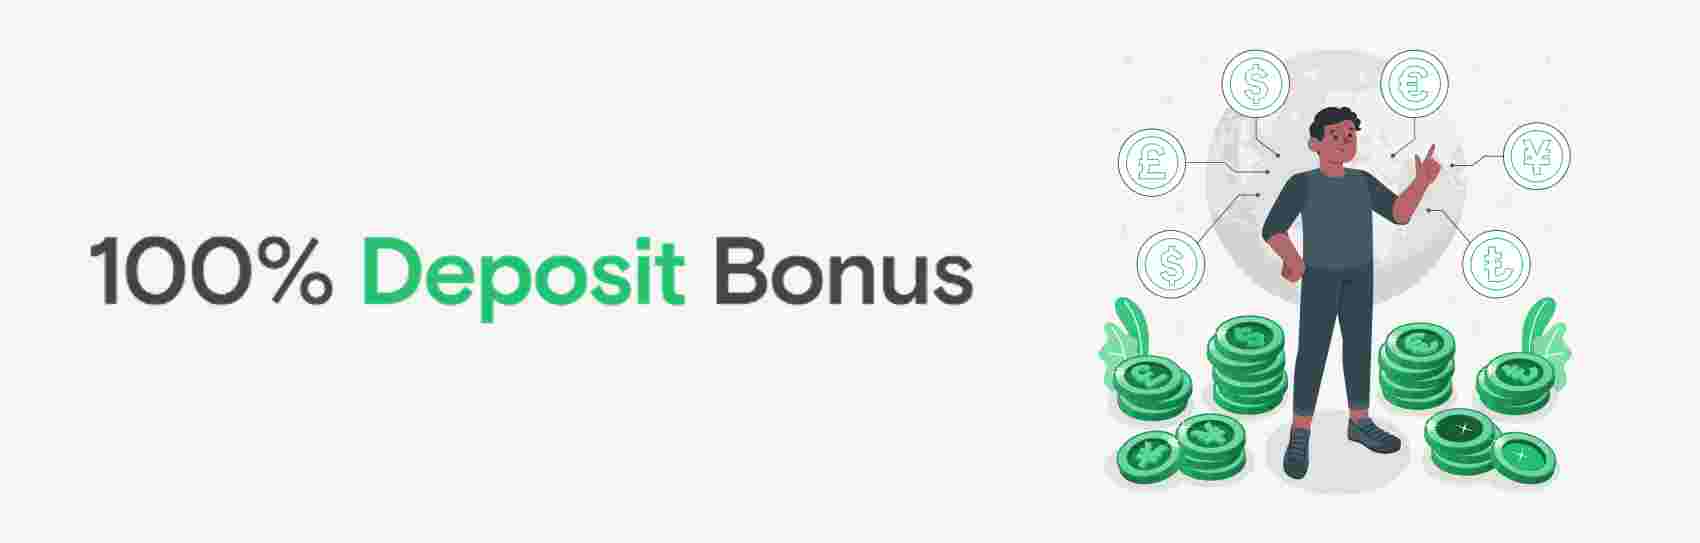 100% Deposit Bonus – FxView